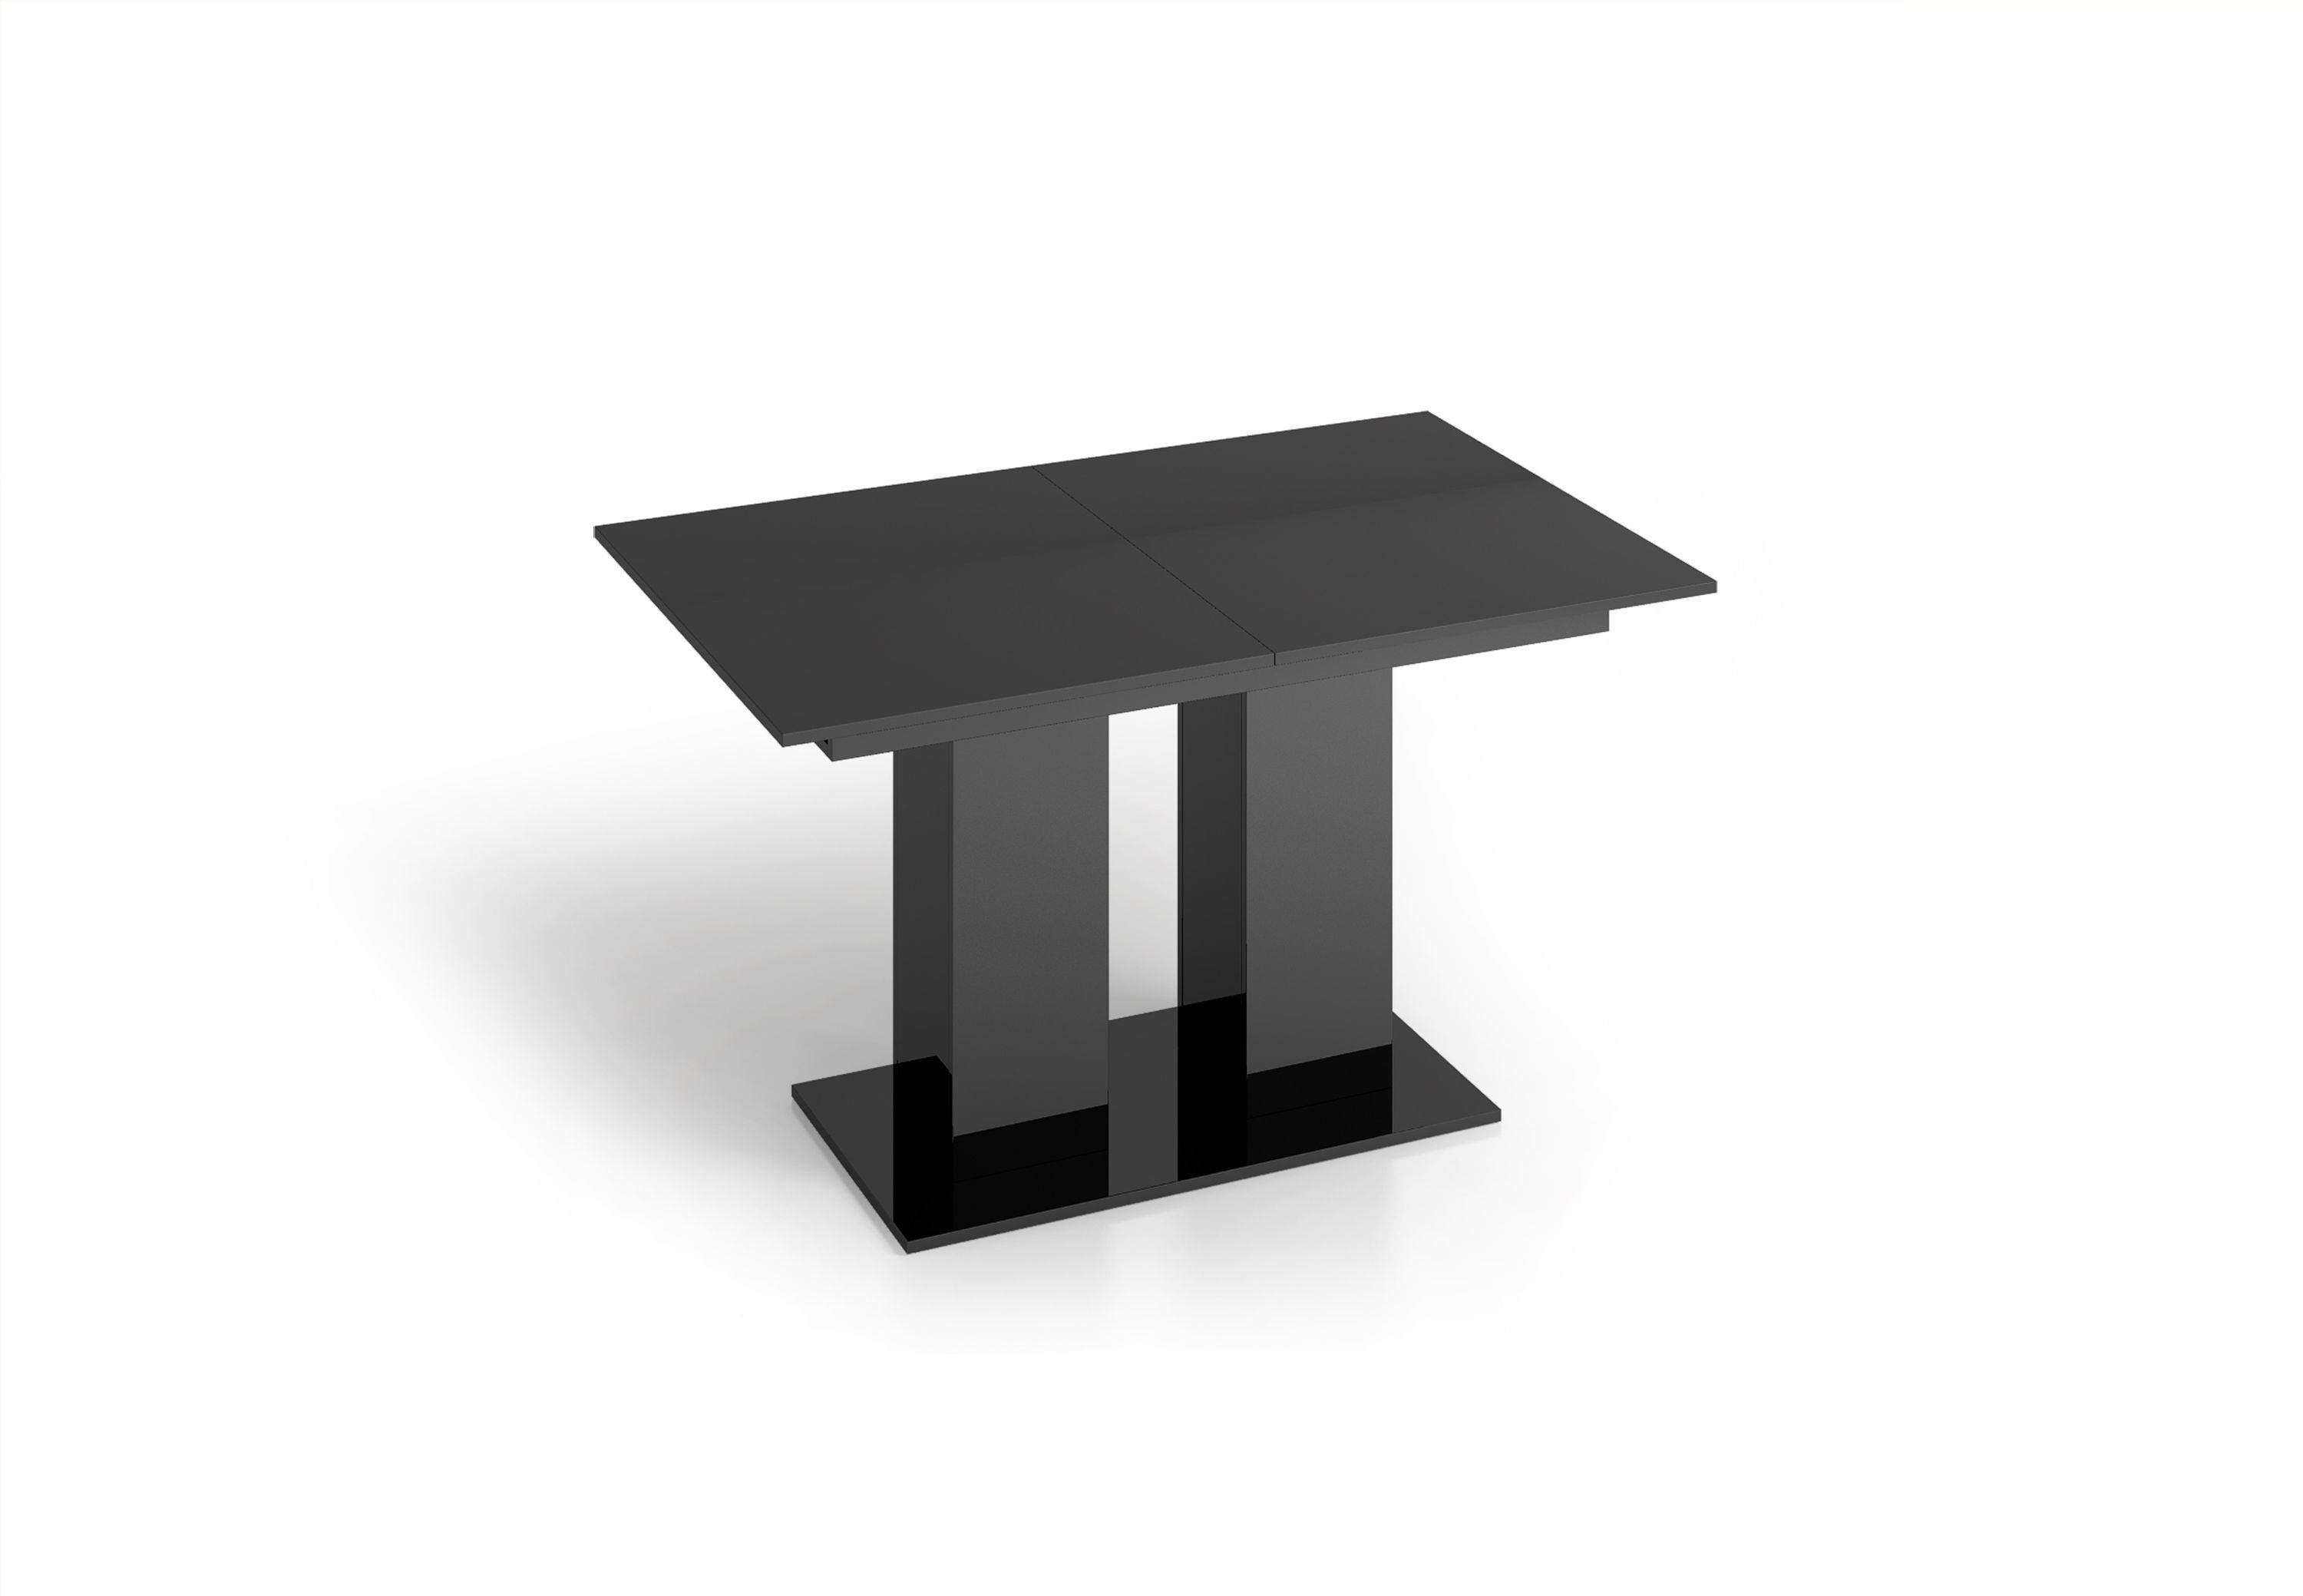 designimpex 130 DE-1 Hochglanz Tisch 170 Design bis ausziehbar Esstisch Schwarz cm